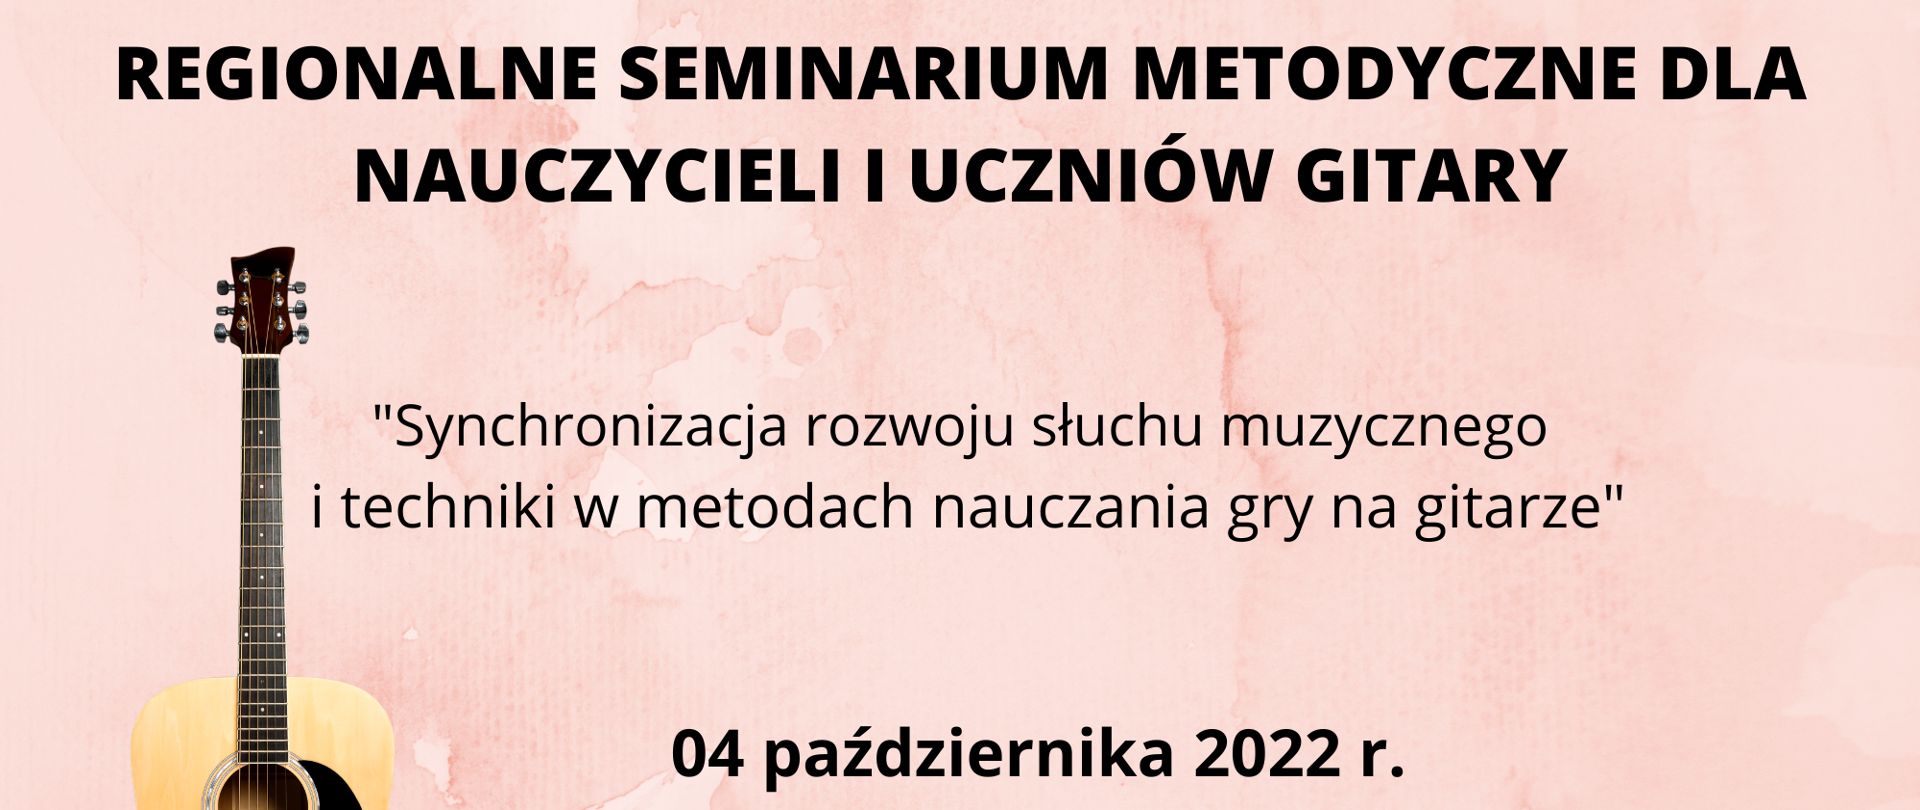 Grafika przedstawiająca na różowym tle napis "Seminarium metodyczne dla nauczycieli gitary" z terminem 4 października 2022 roku.